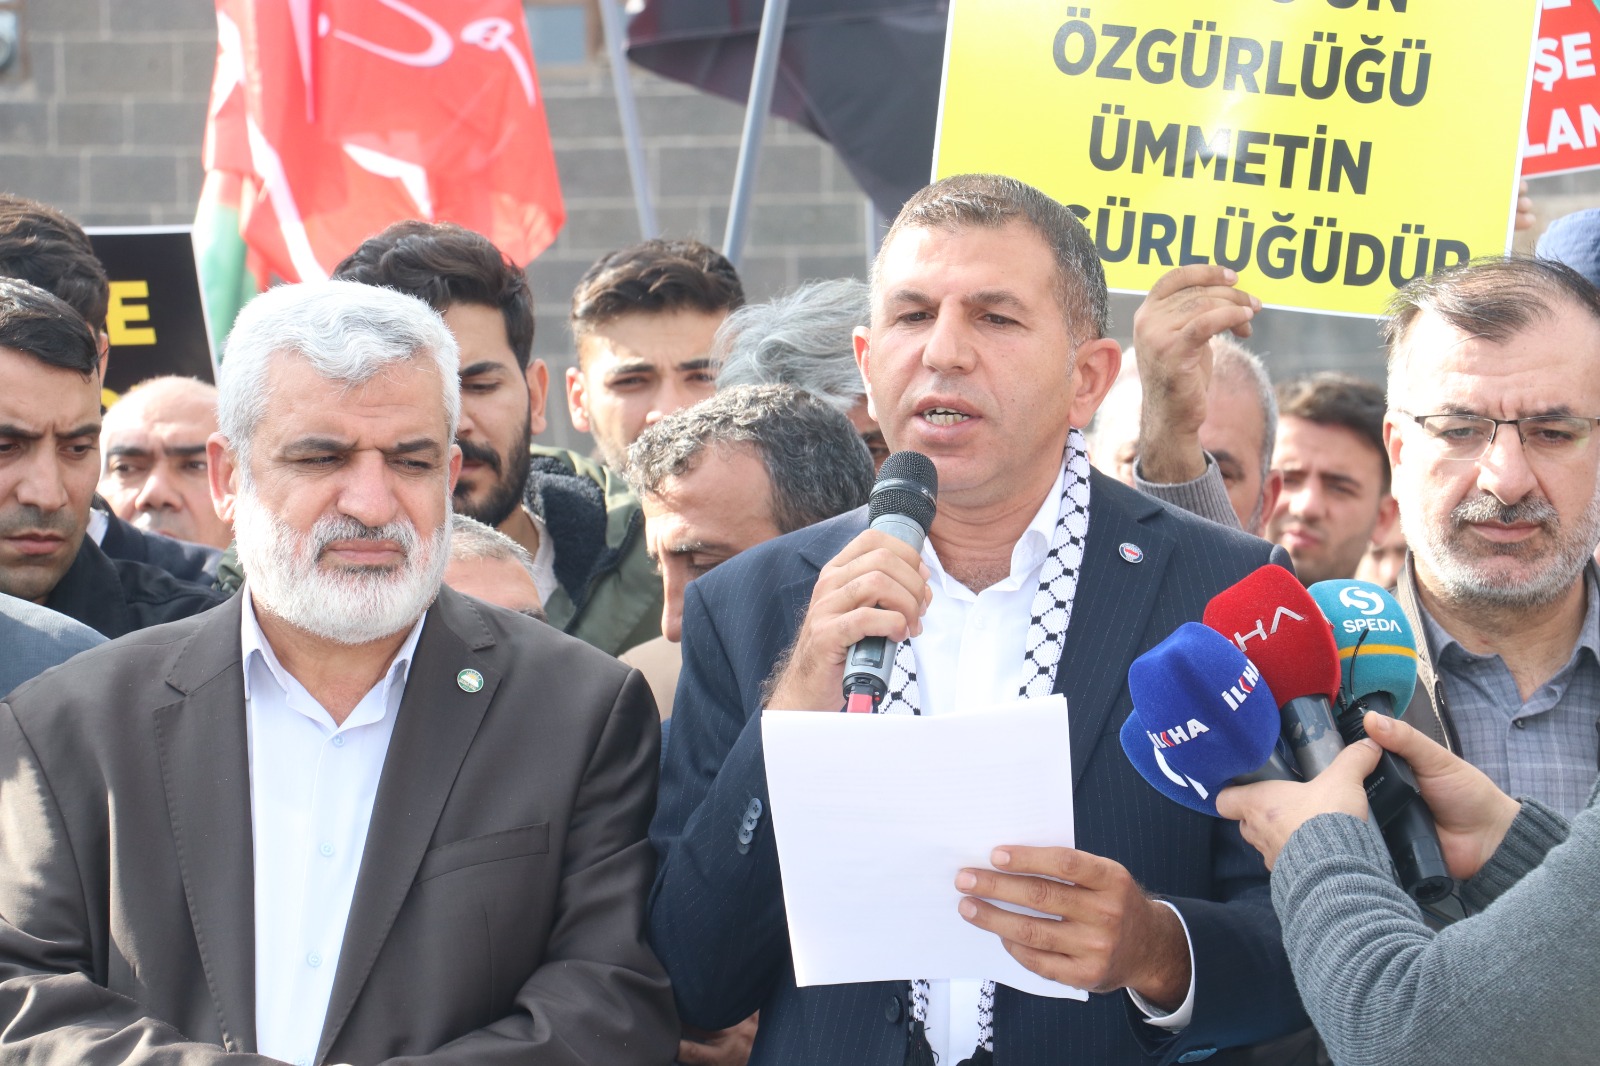 diyarbakirda-cuma-namazi-cikisi-israil-protestosu-yenicag8.jpg